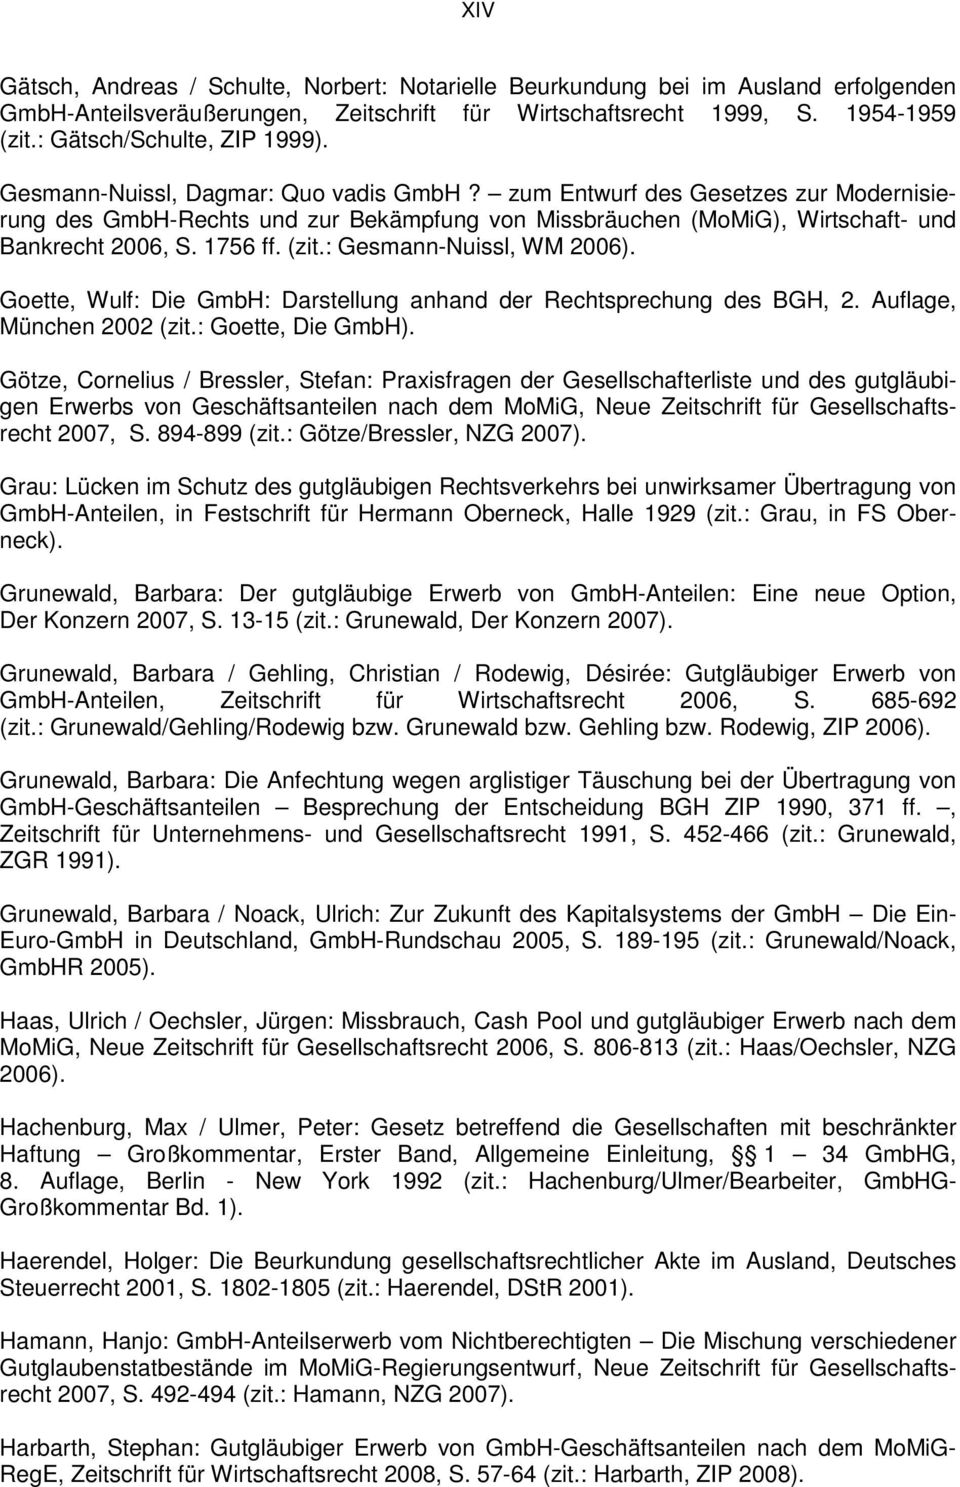 zum Entwurf des Gesetzes zur Modernisierung des GmbH-Rechts und zur Bekämpfung von Missbräuchen (MoMiG), Wirtschaft- und Bankrecht 2006, S. 1756 ff. (zit.: Gesmann-Nuissl, WM 2006).